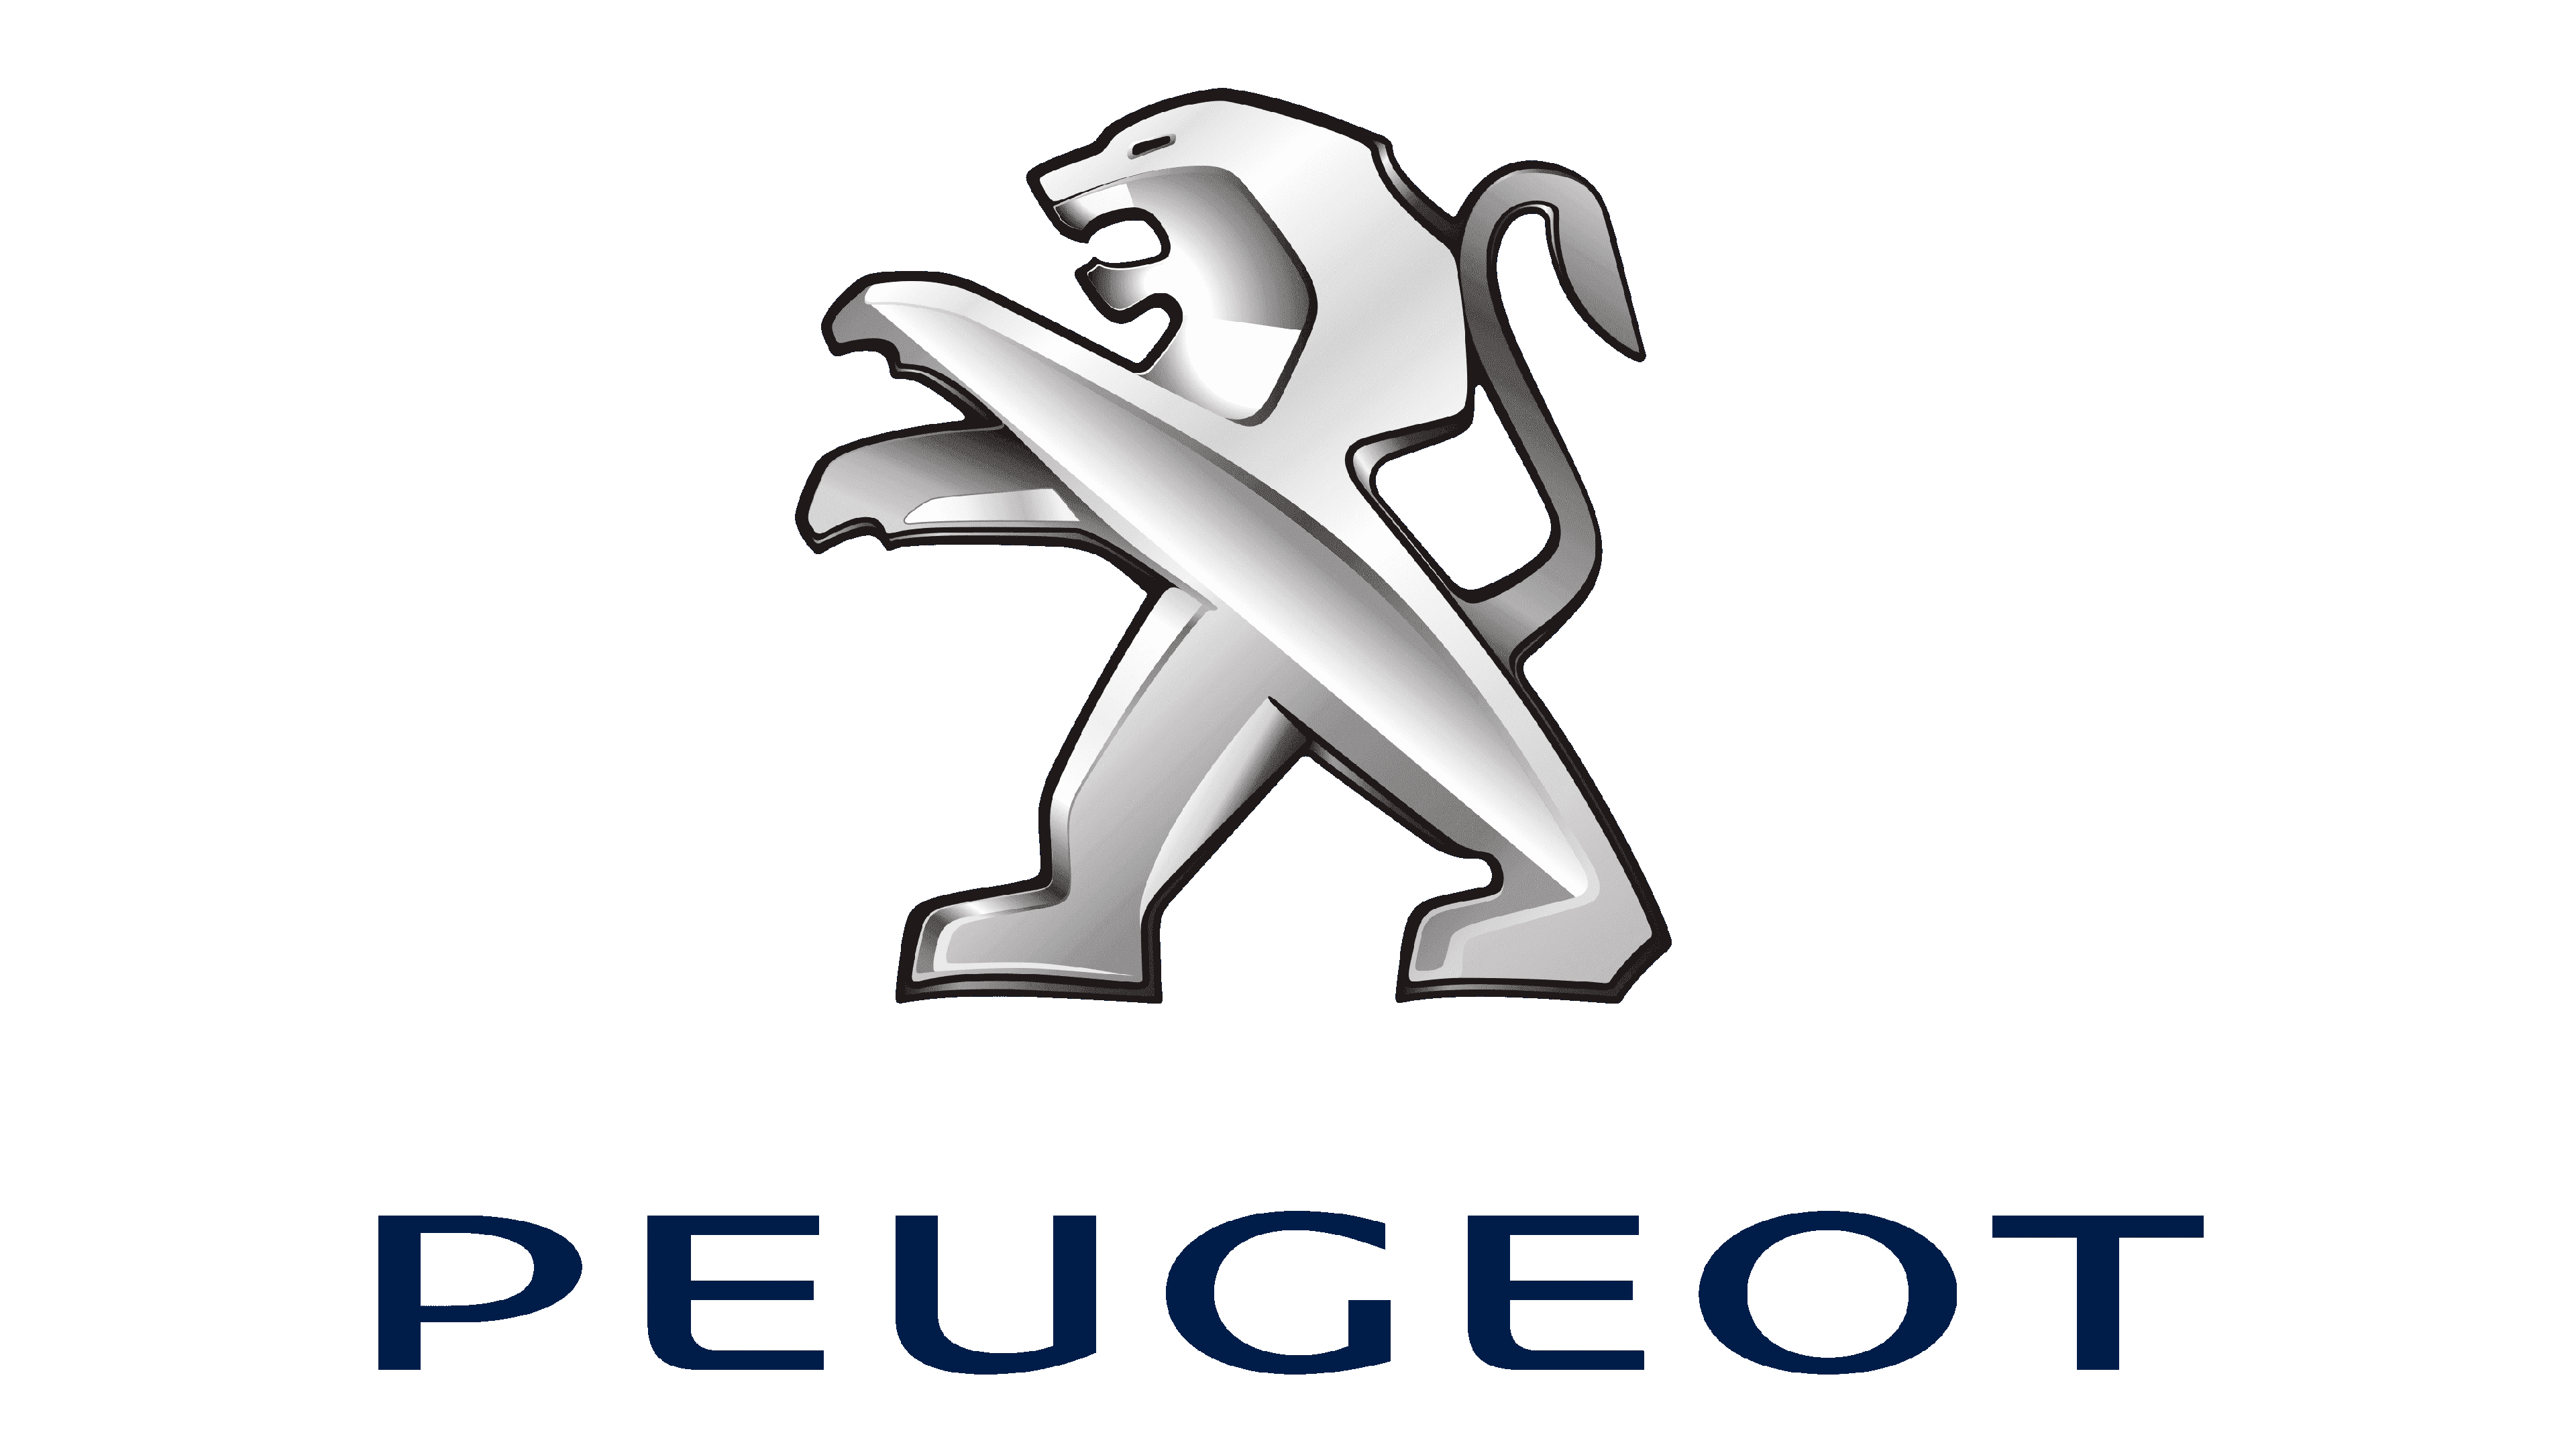 Download Peugeot Car Logo Png Brand Image HQ PNG Image | FreePNGImg